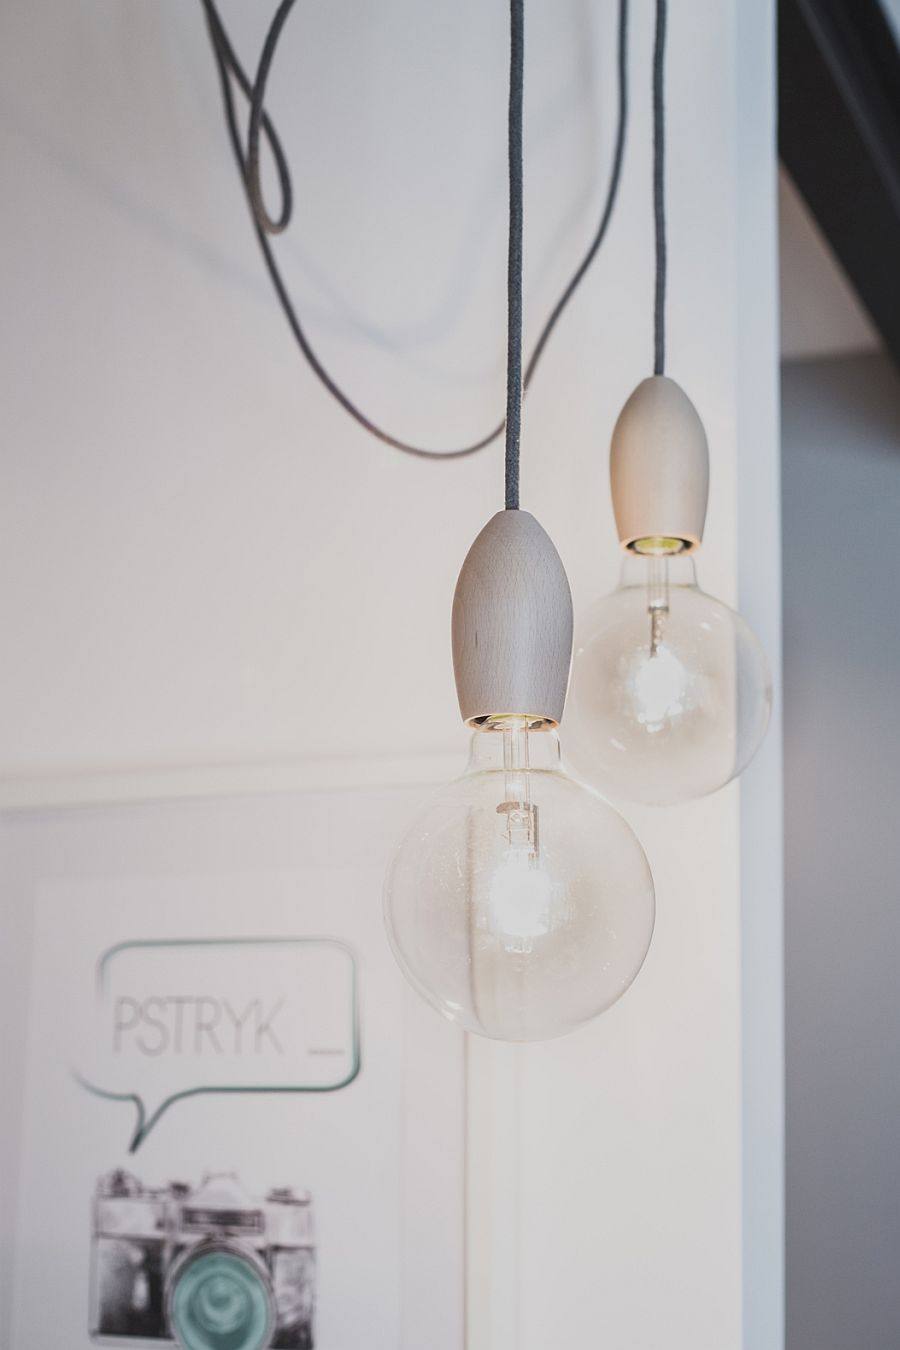 波兰北欧风格公寓_Edison-bulbs-with-Scandinavian-inspired-design-offer-lovely-lighting.jpg